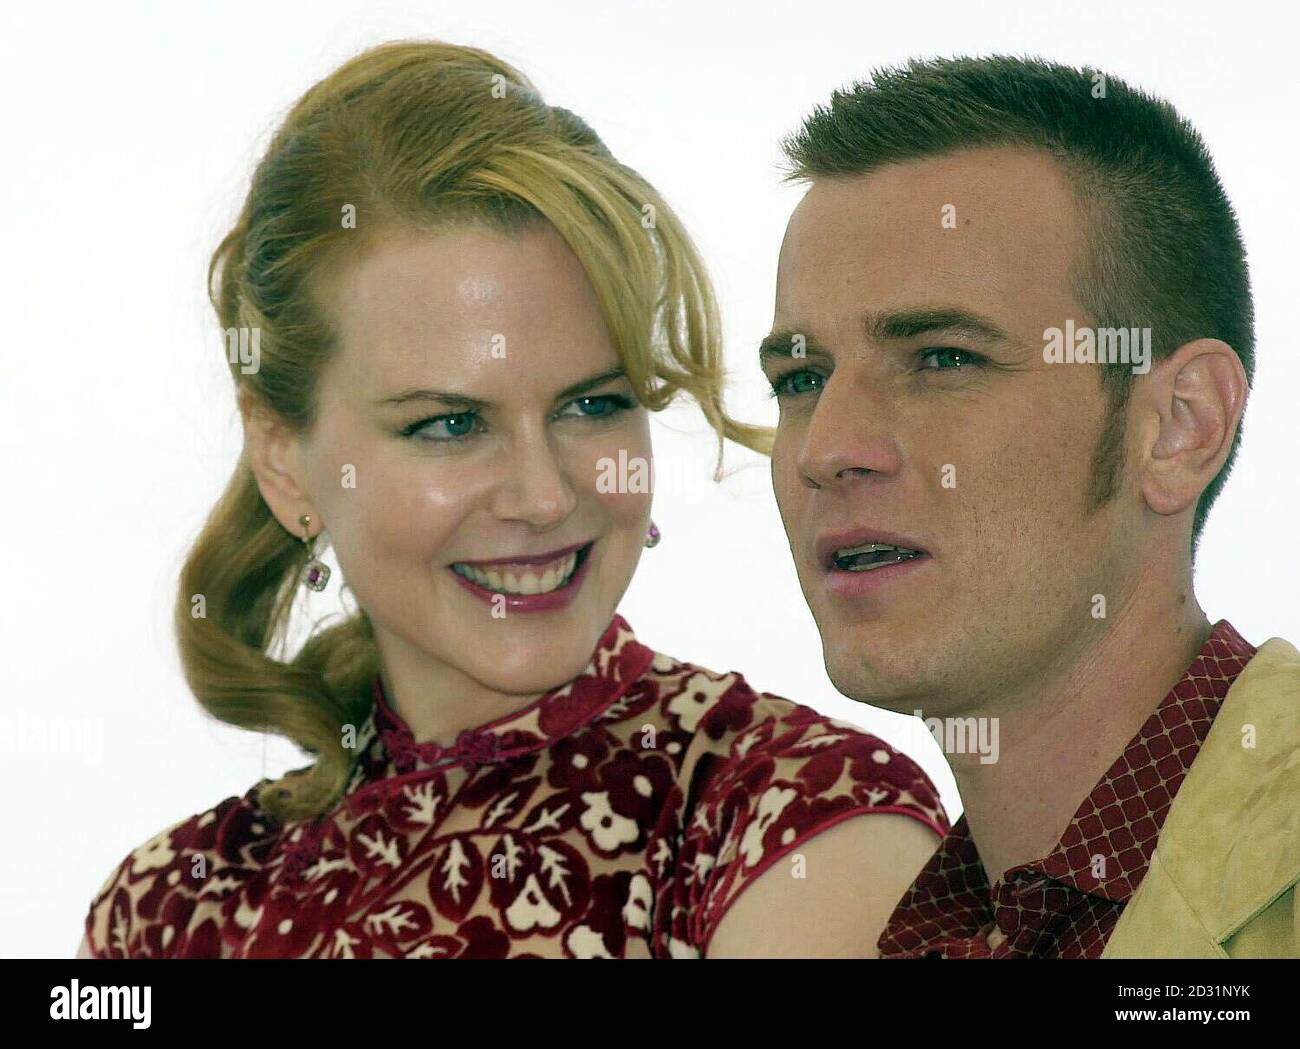 Die Schauspieler Nicole Kidman und Ewan McGregor bei den Filmfestspielen von Cannes, Frankreich. Ihr Film Moulin Rouge eröffnet heute Abend das 54. Festival, das voraussichtlich rund 40,000 Menschen anziehen wird. Stockfoto